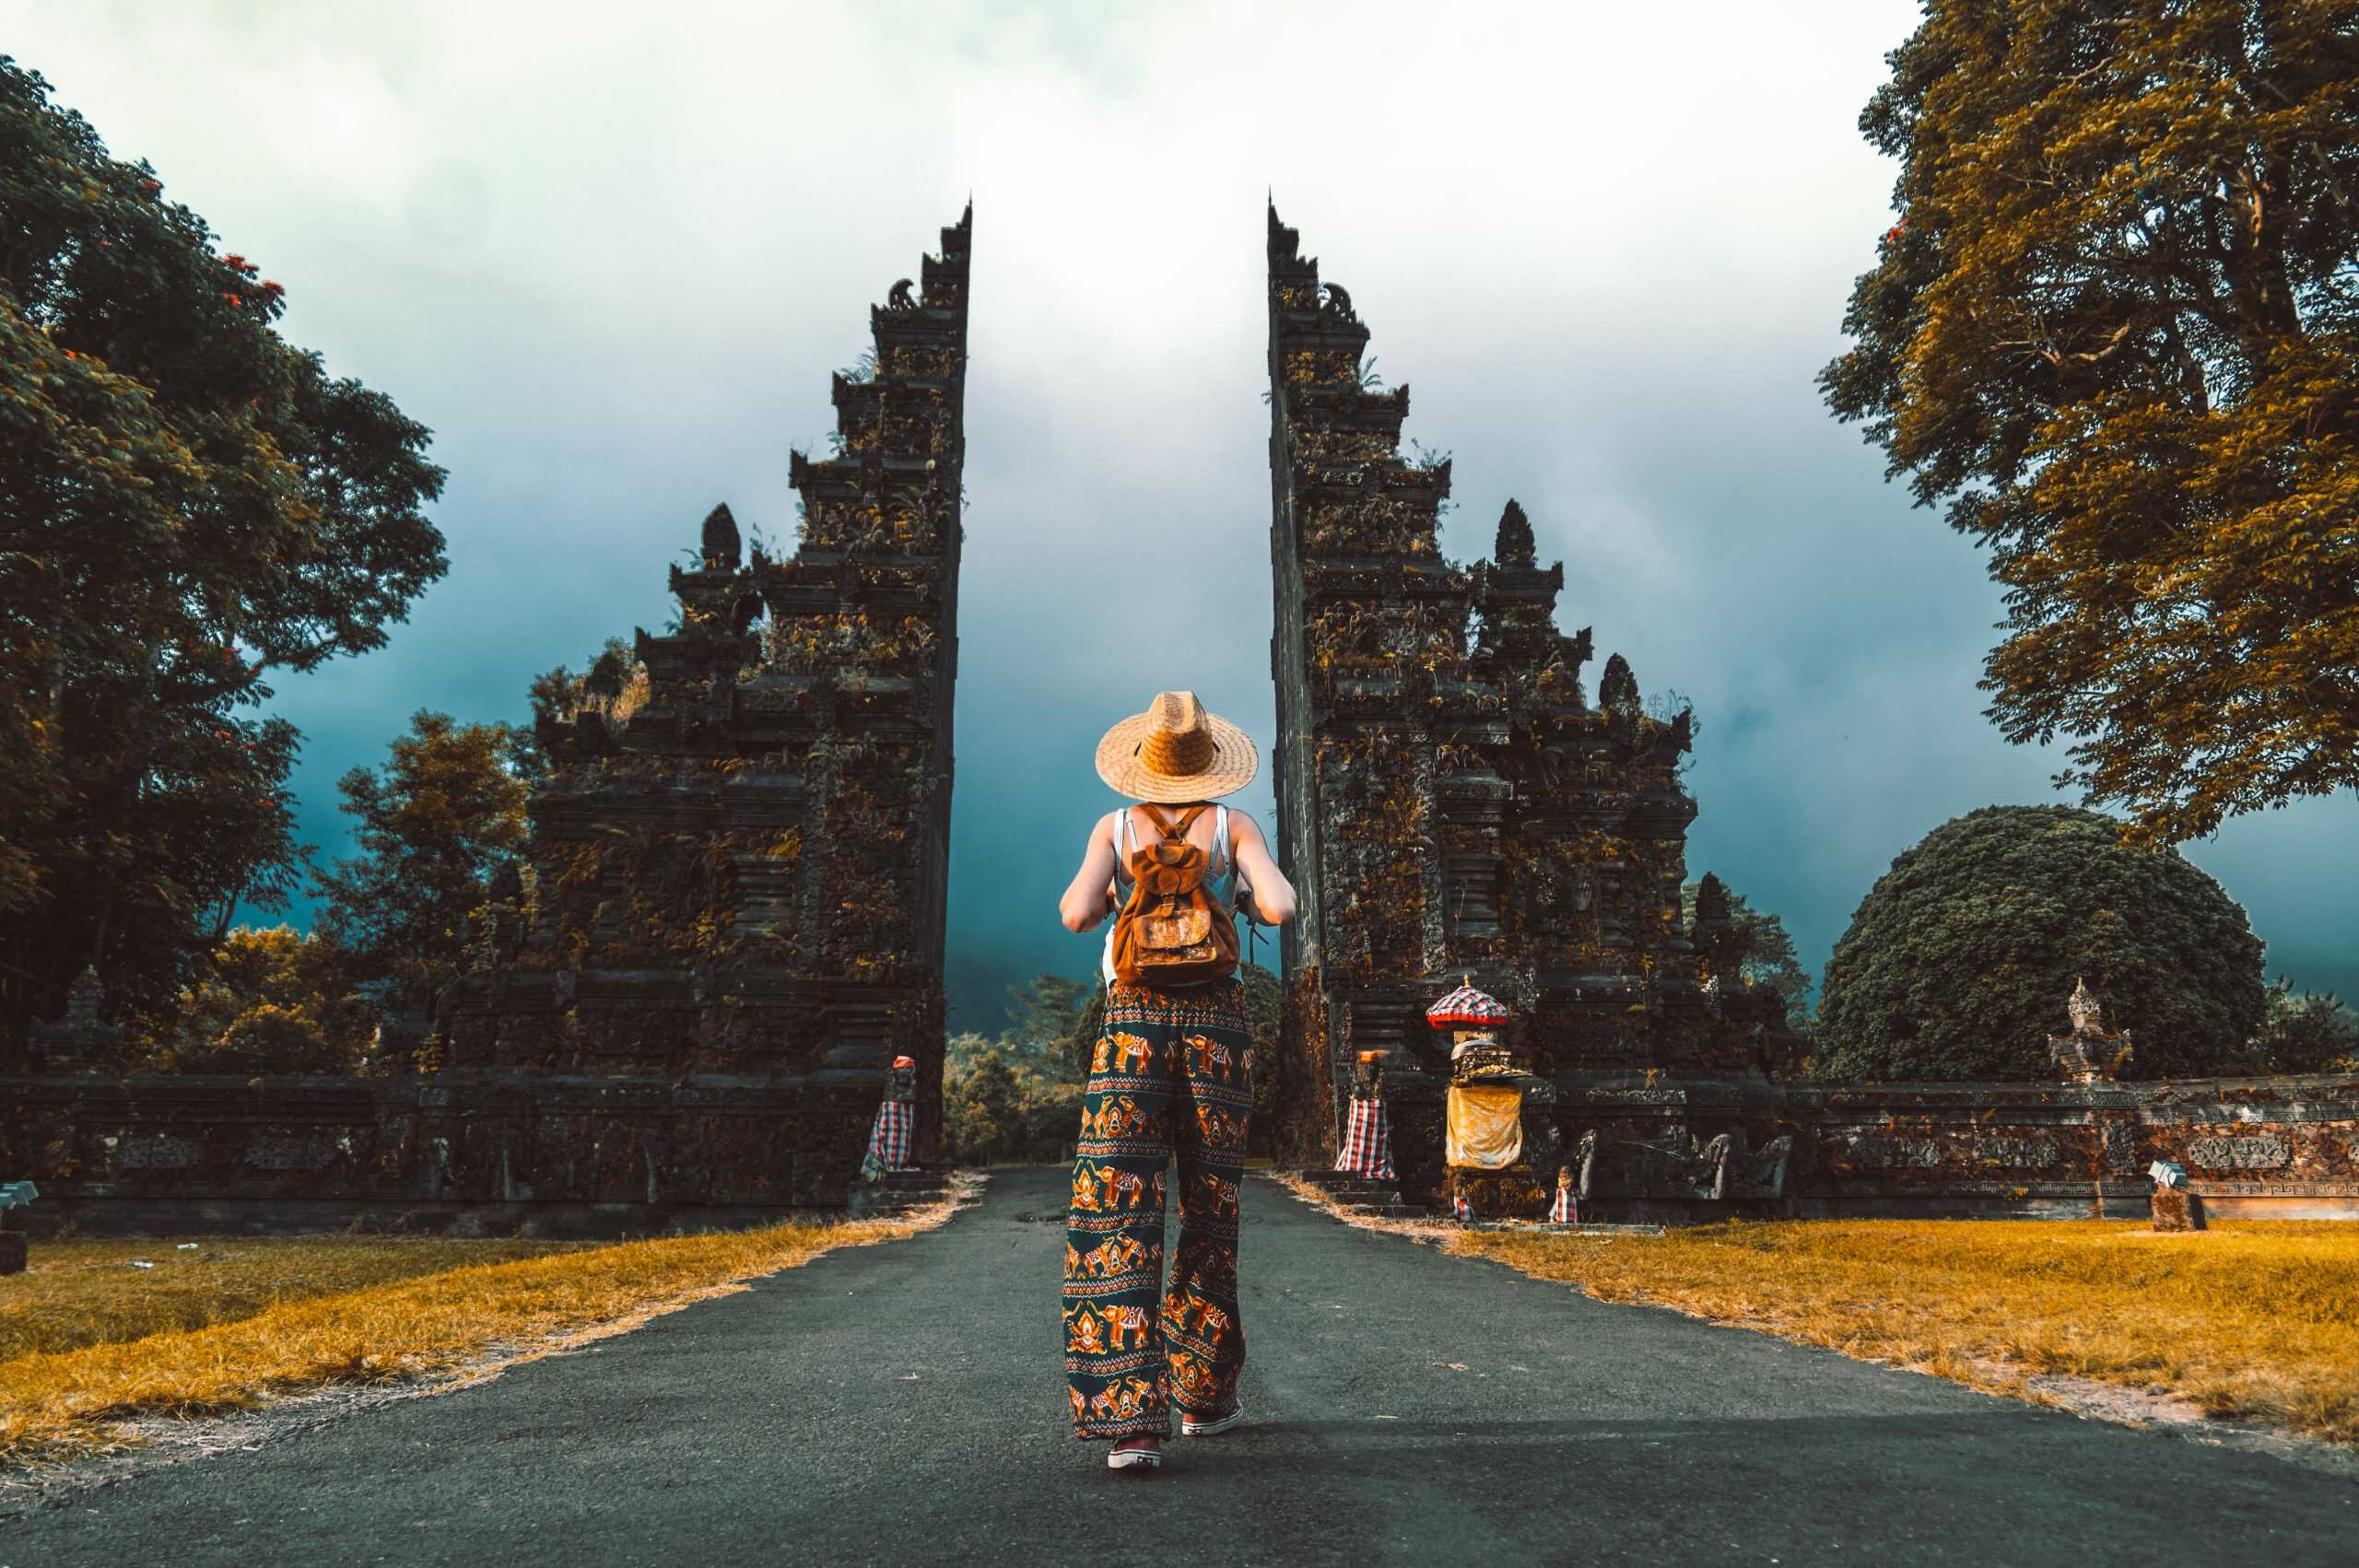 Du lịch Indonesia Bali - Đền Tanah lot từ Sài Gòn giá tốt